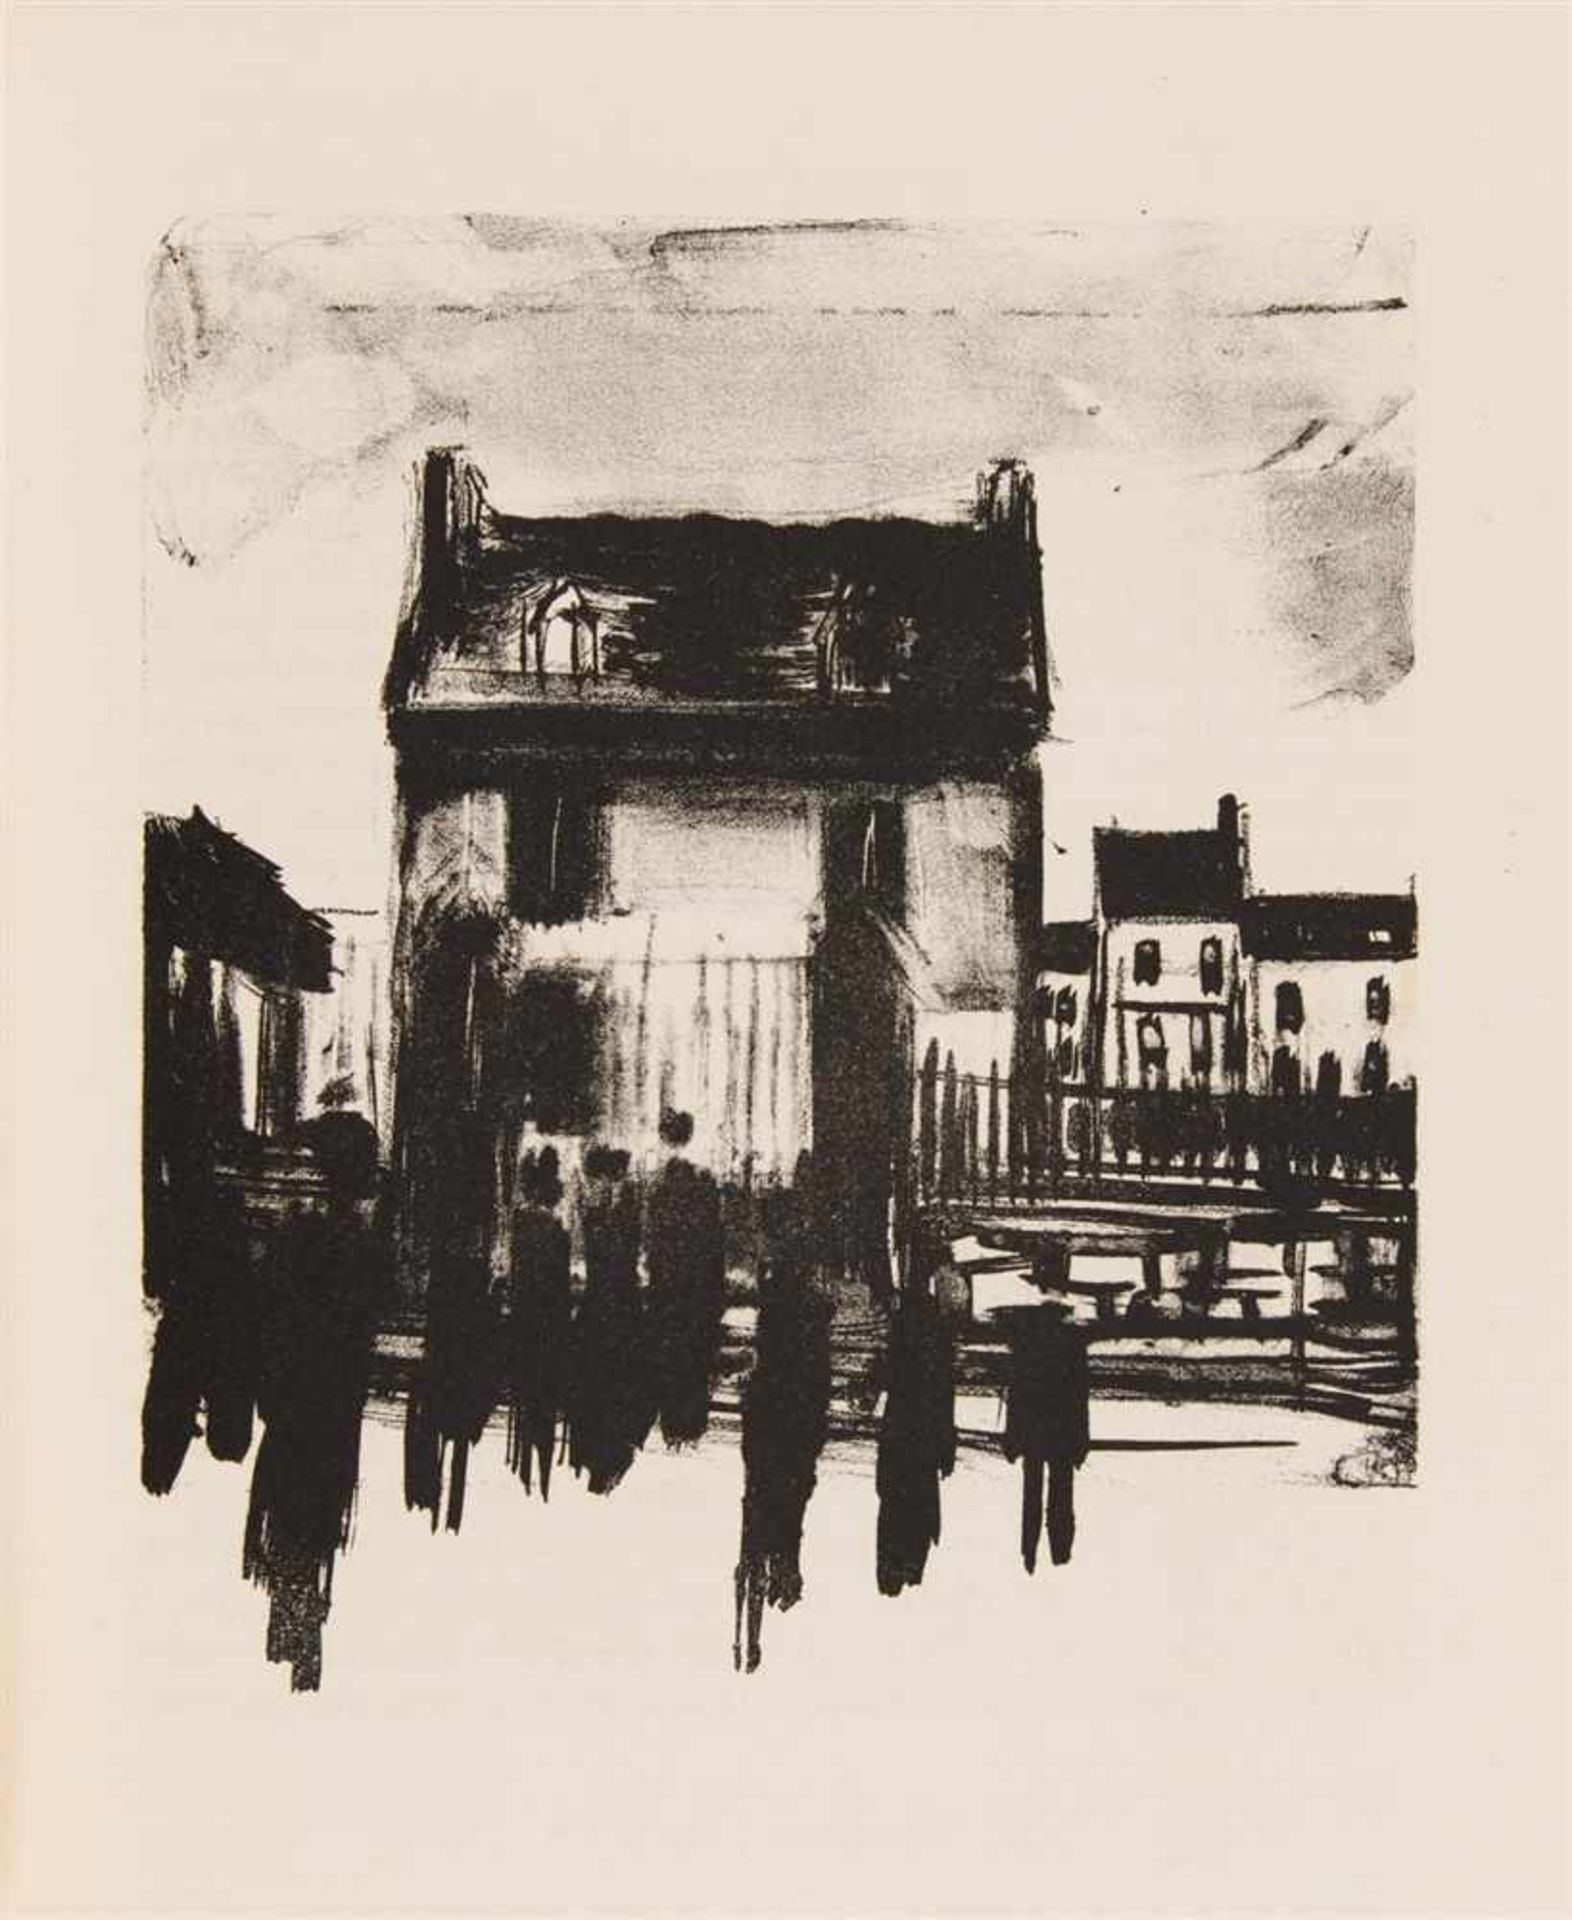 VLAMINCK, MAURICE DERAYMOND RADIGUET: Le diable au corps. Paris: Editions M. Seheur (1926). 29 x